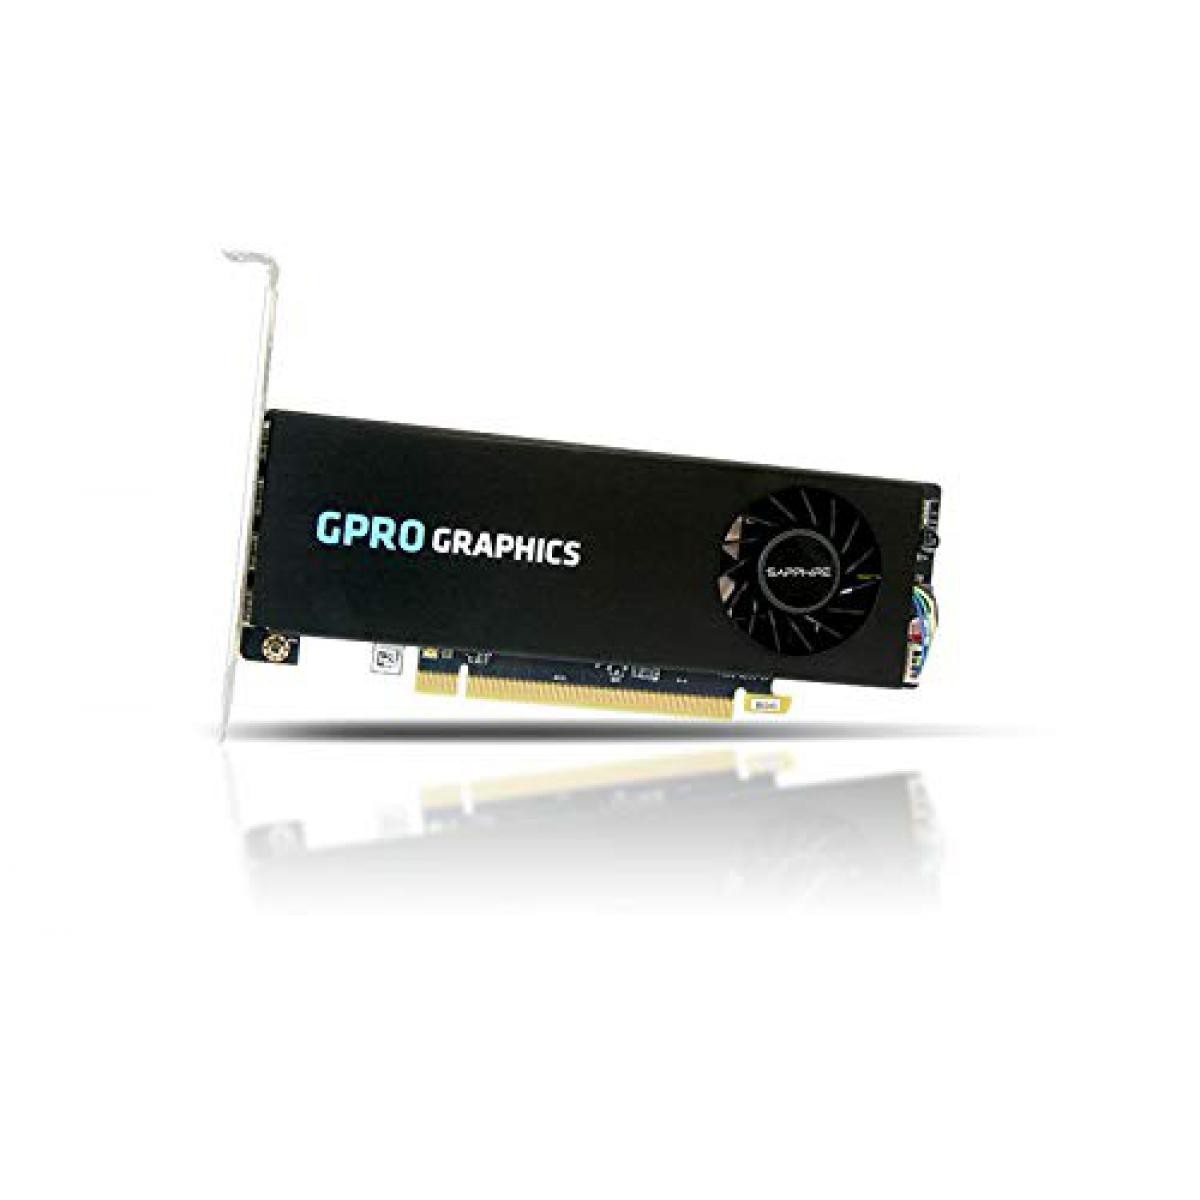 Sapphire - SAPPHIRE GPRO 4200 4G GDDR5 PCI-E - Carte Graphique NVIDIA